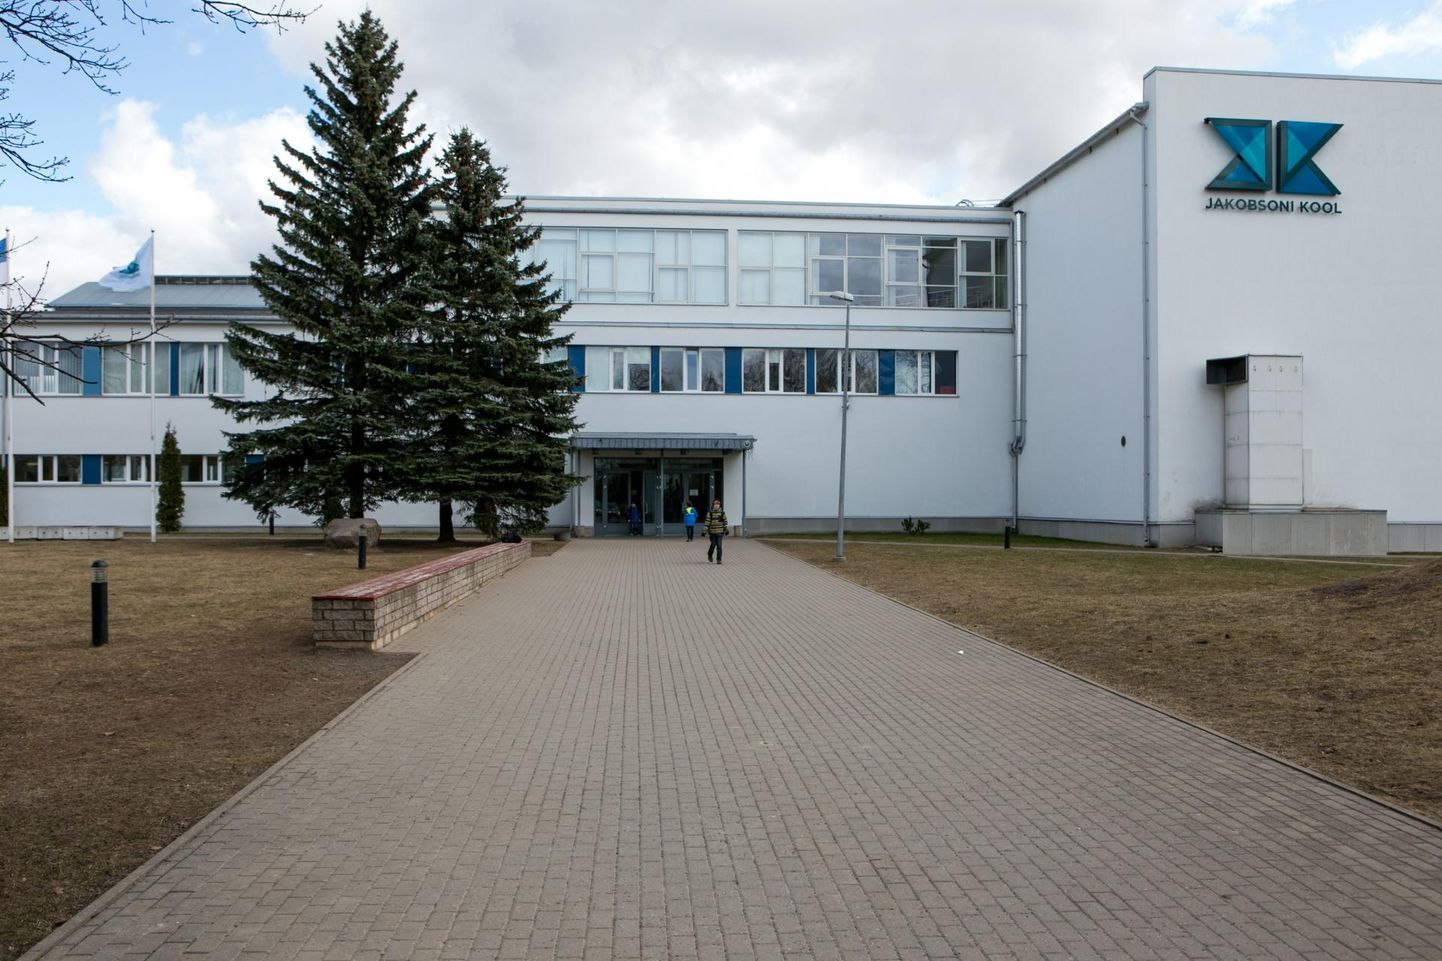  Jakobsoni kool Viljandis.

 